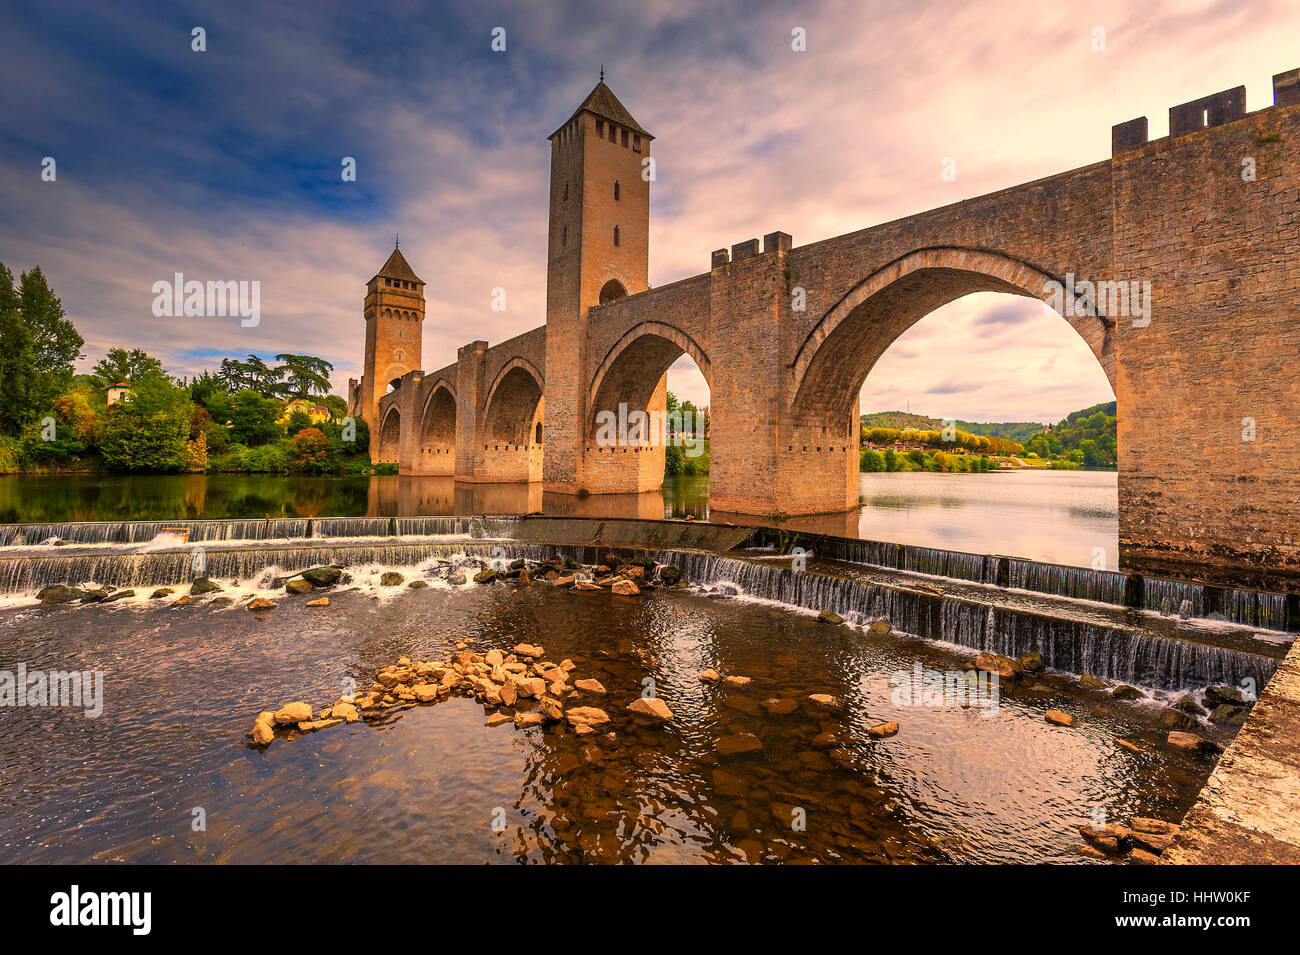 Puente,Francia,torres medievales,,río,agua,valantre,cahors,fortificada Foto de stock